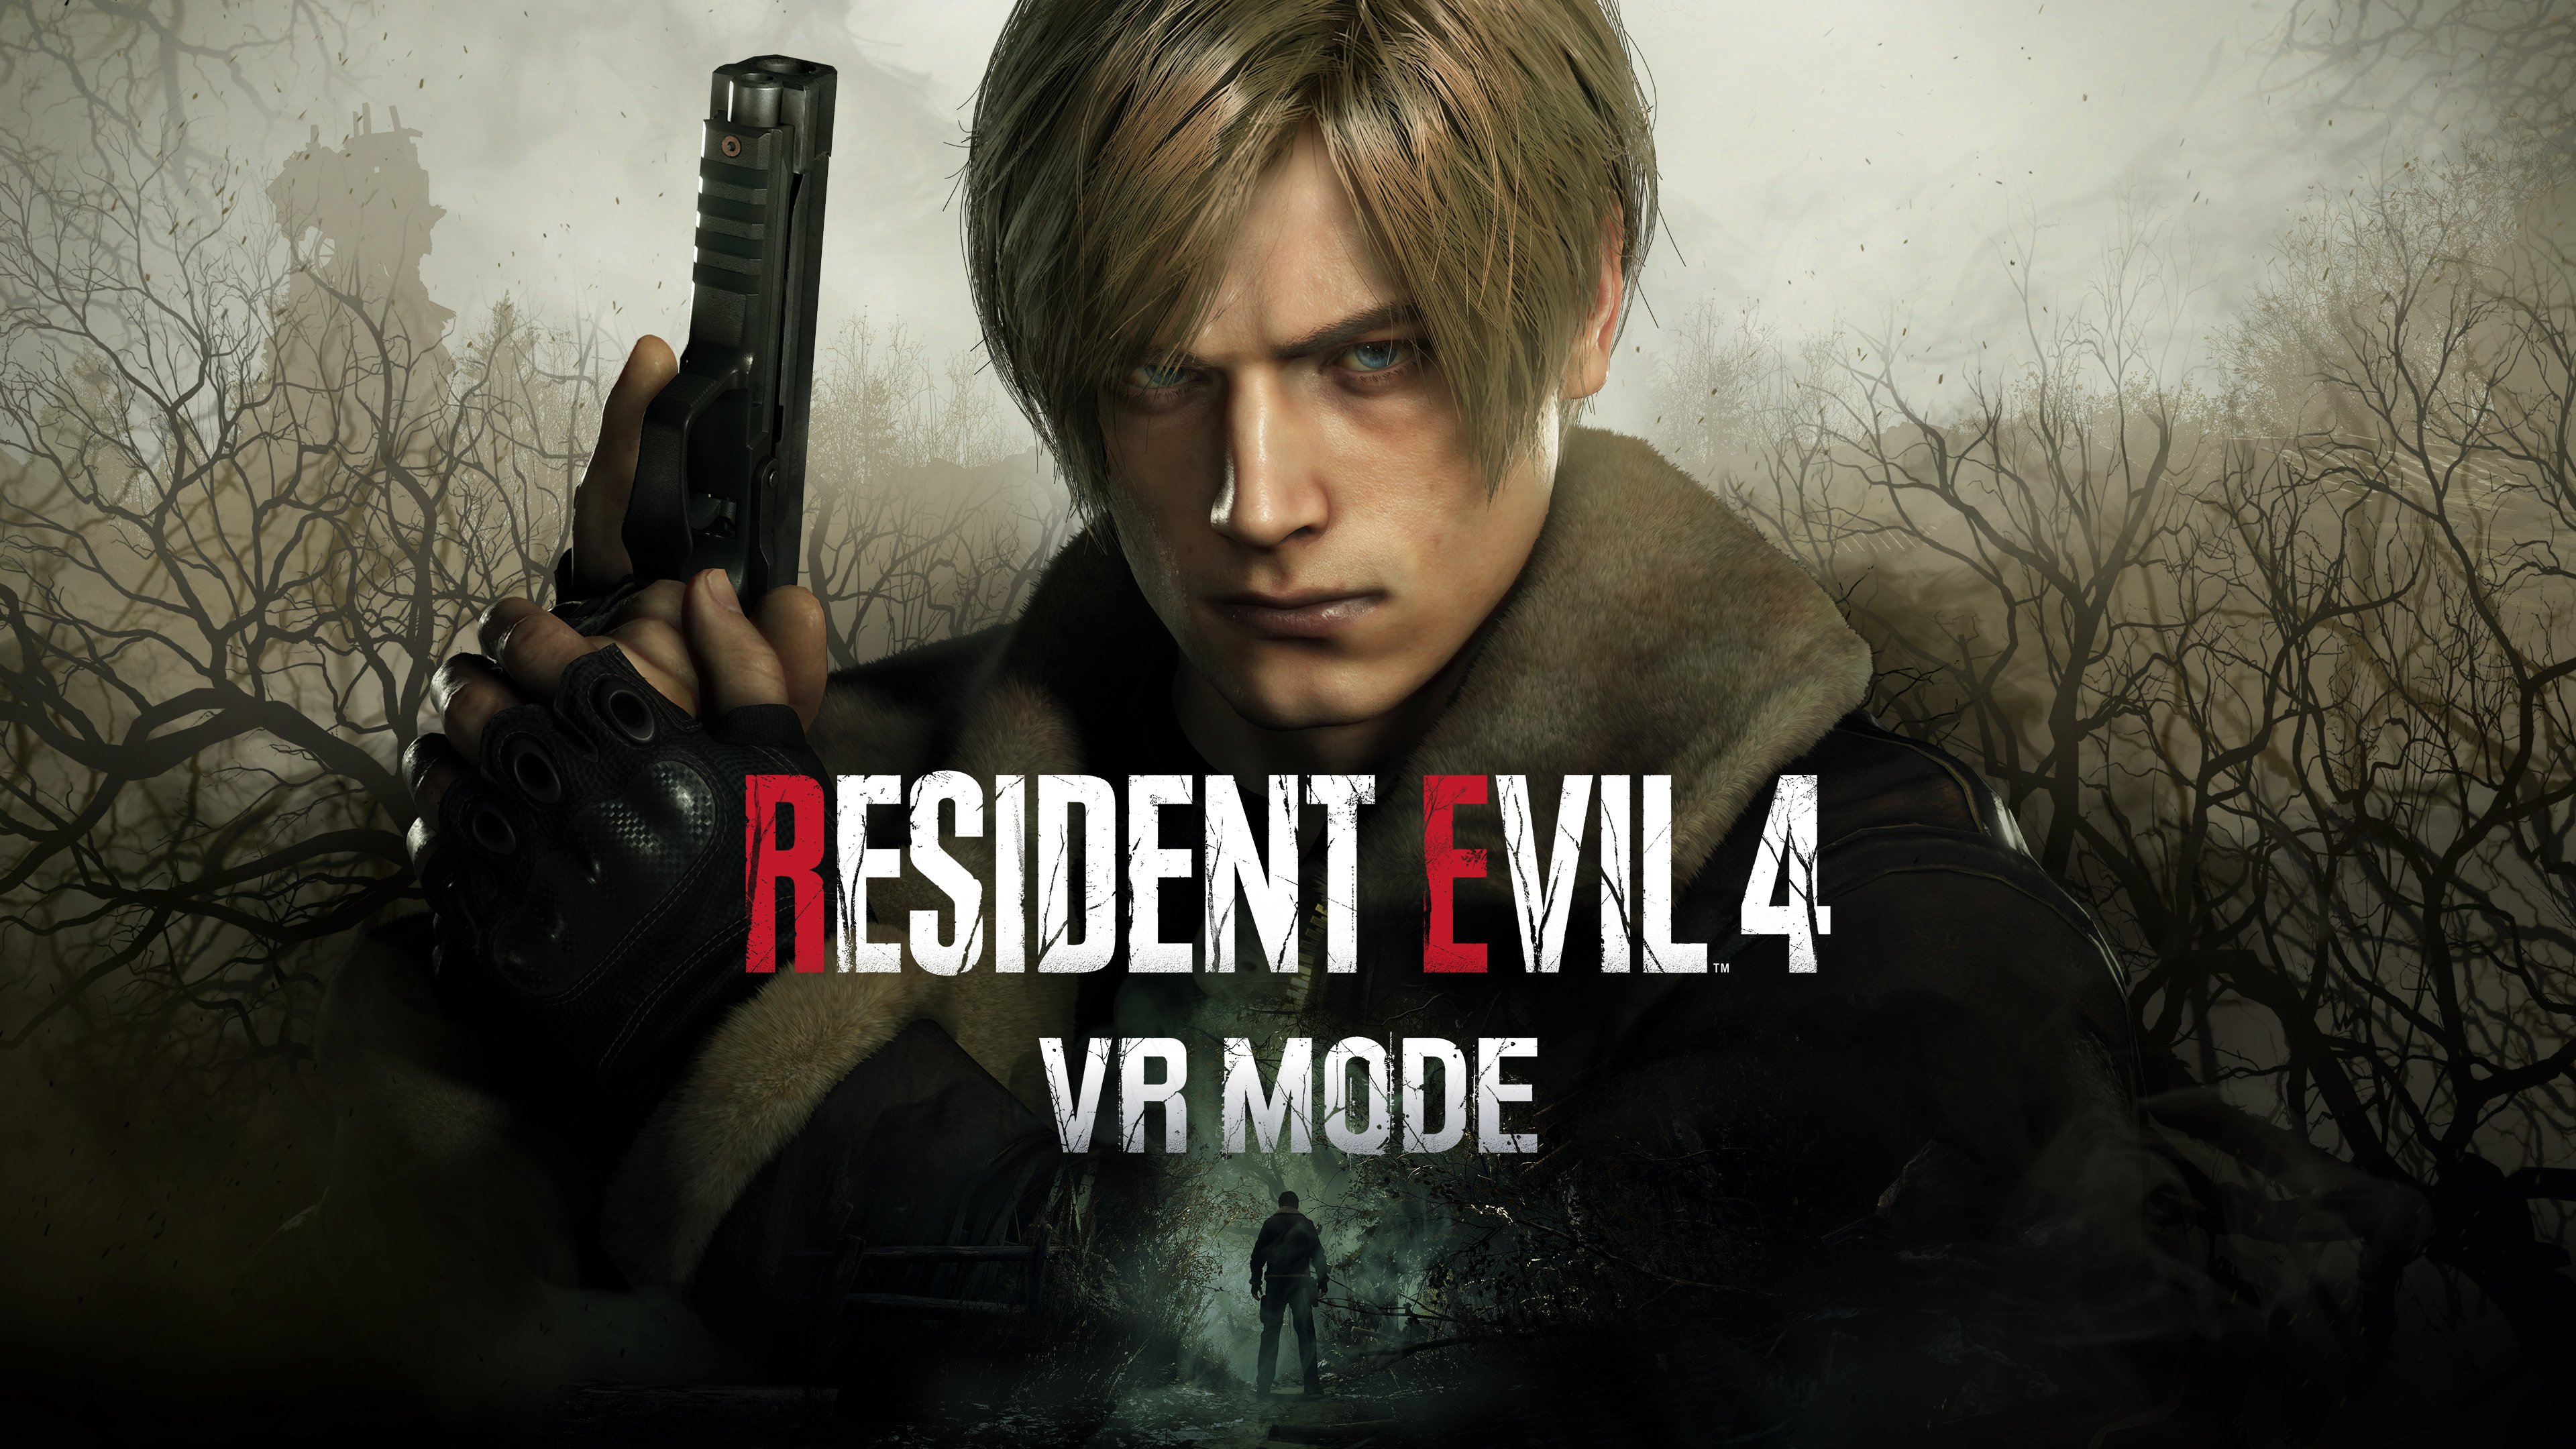 Resident Evil 4 - Playstation 5 : Target